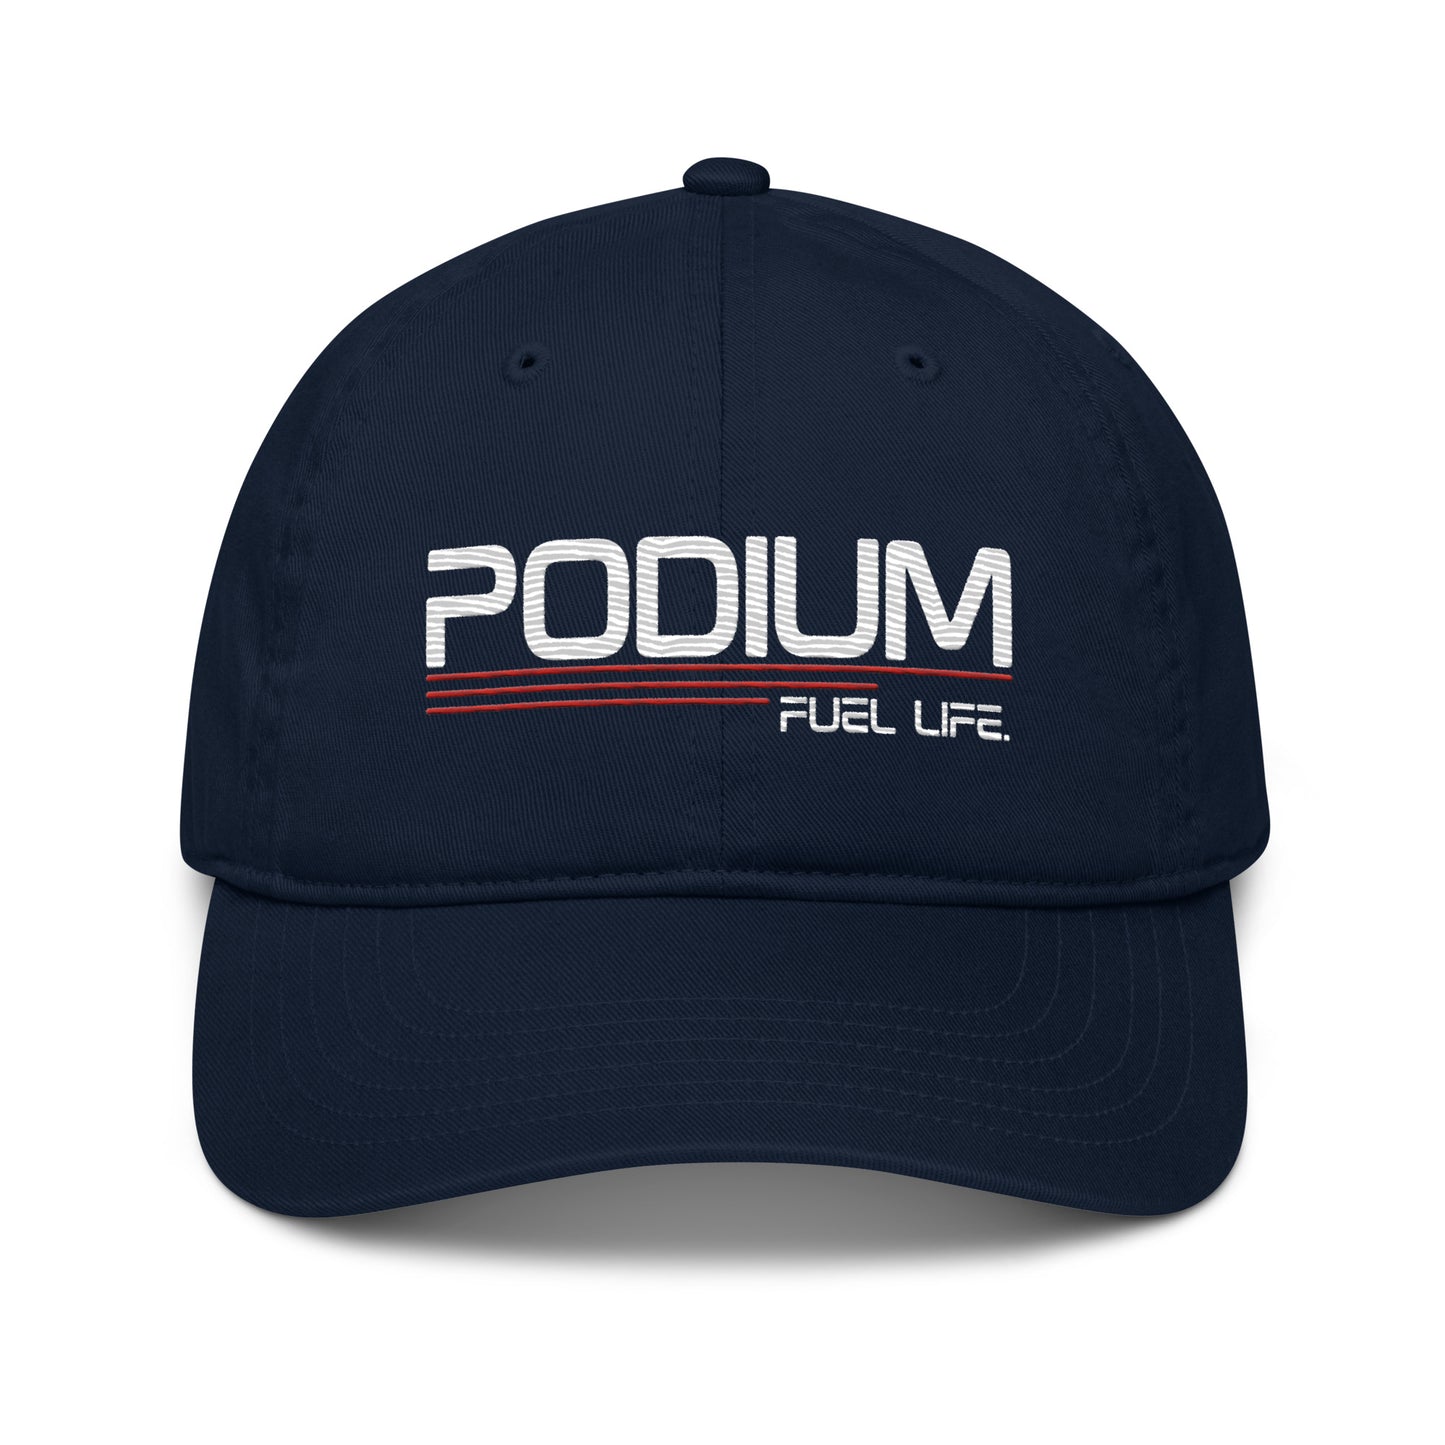 Podium Fuel Life Eco Hat - Unisex